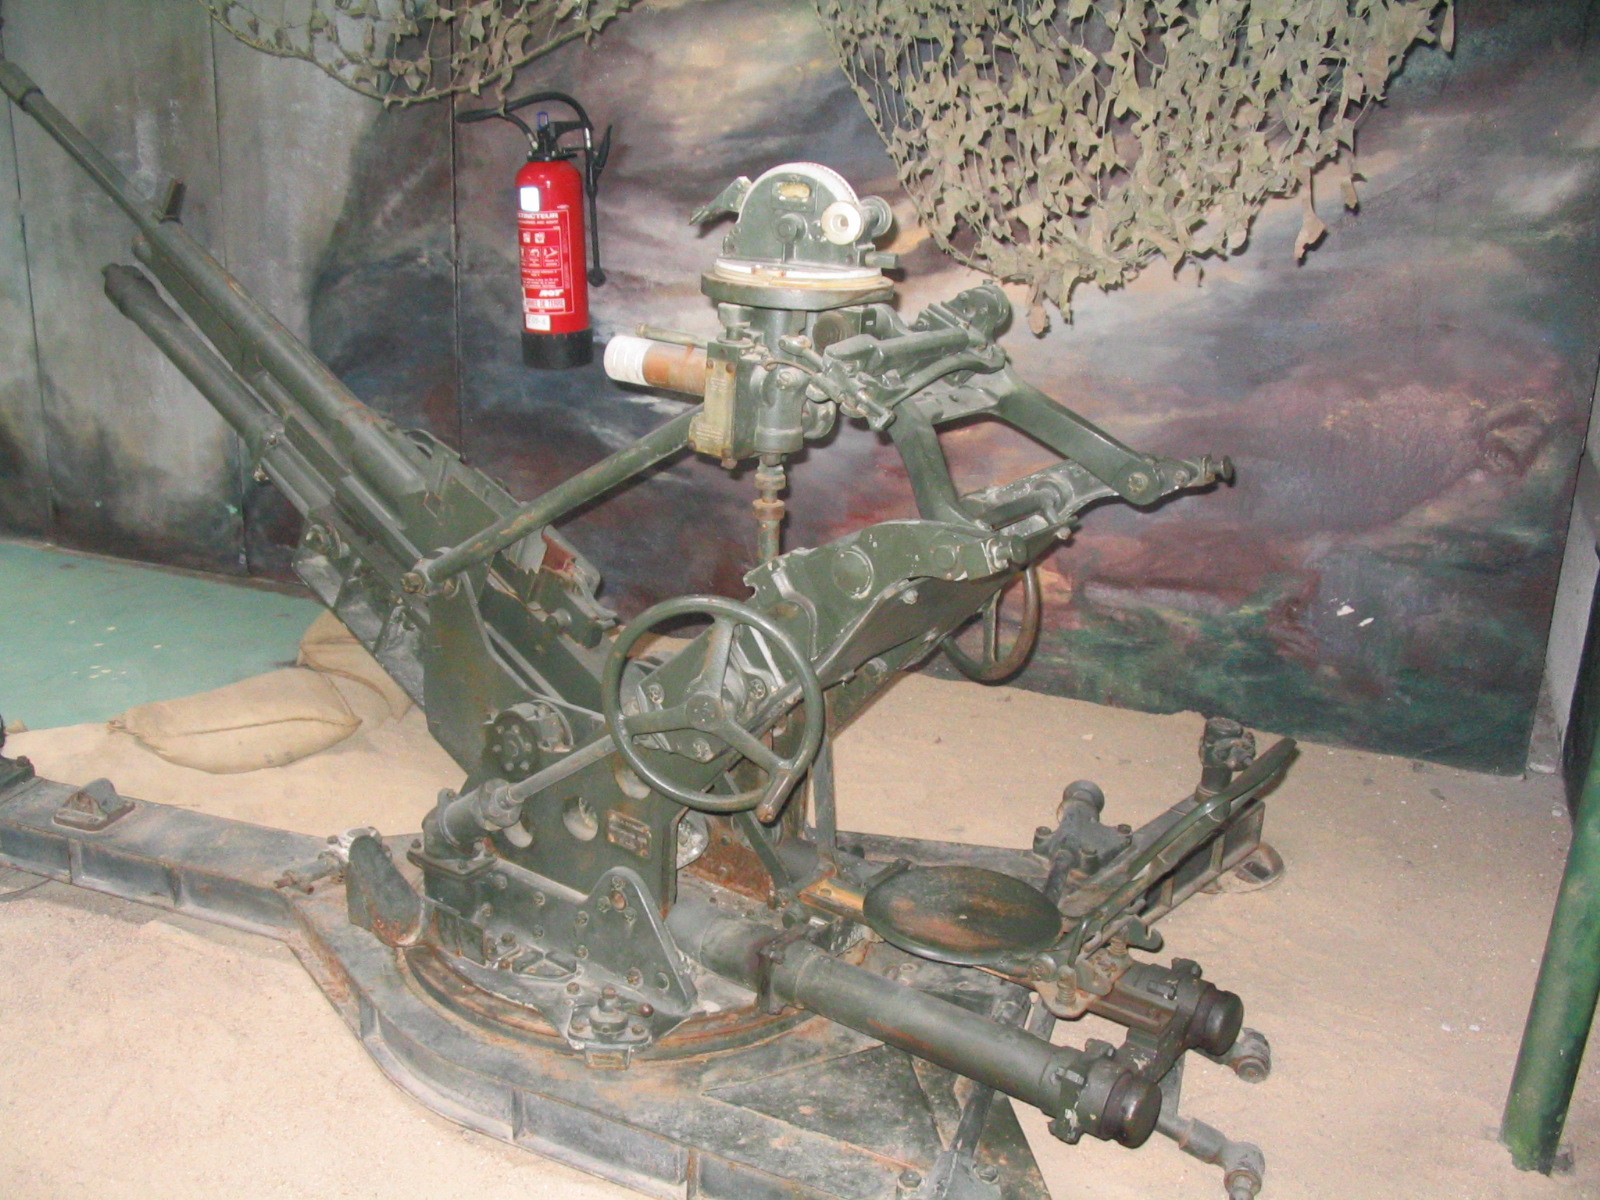 25 мм ру. 25-Мм автоматическая зенитная пушка Гочкисс. 25-Мм зенитная пушка Hotchkiss mle 1938. Гочкис 25 мм пушка. Hotchkiss 25 mm зенитка.